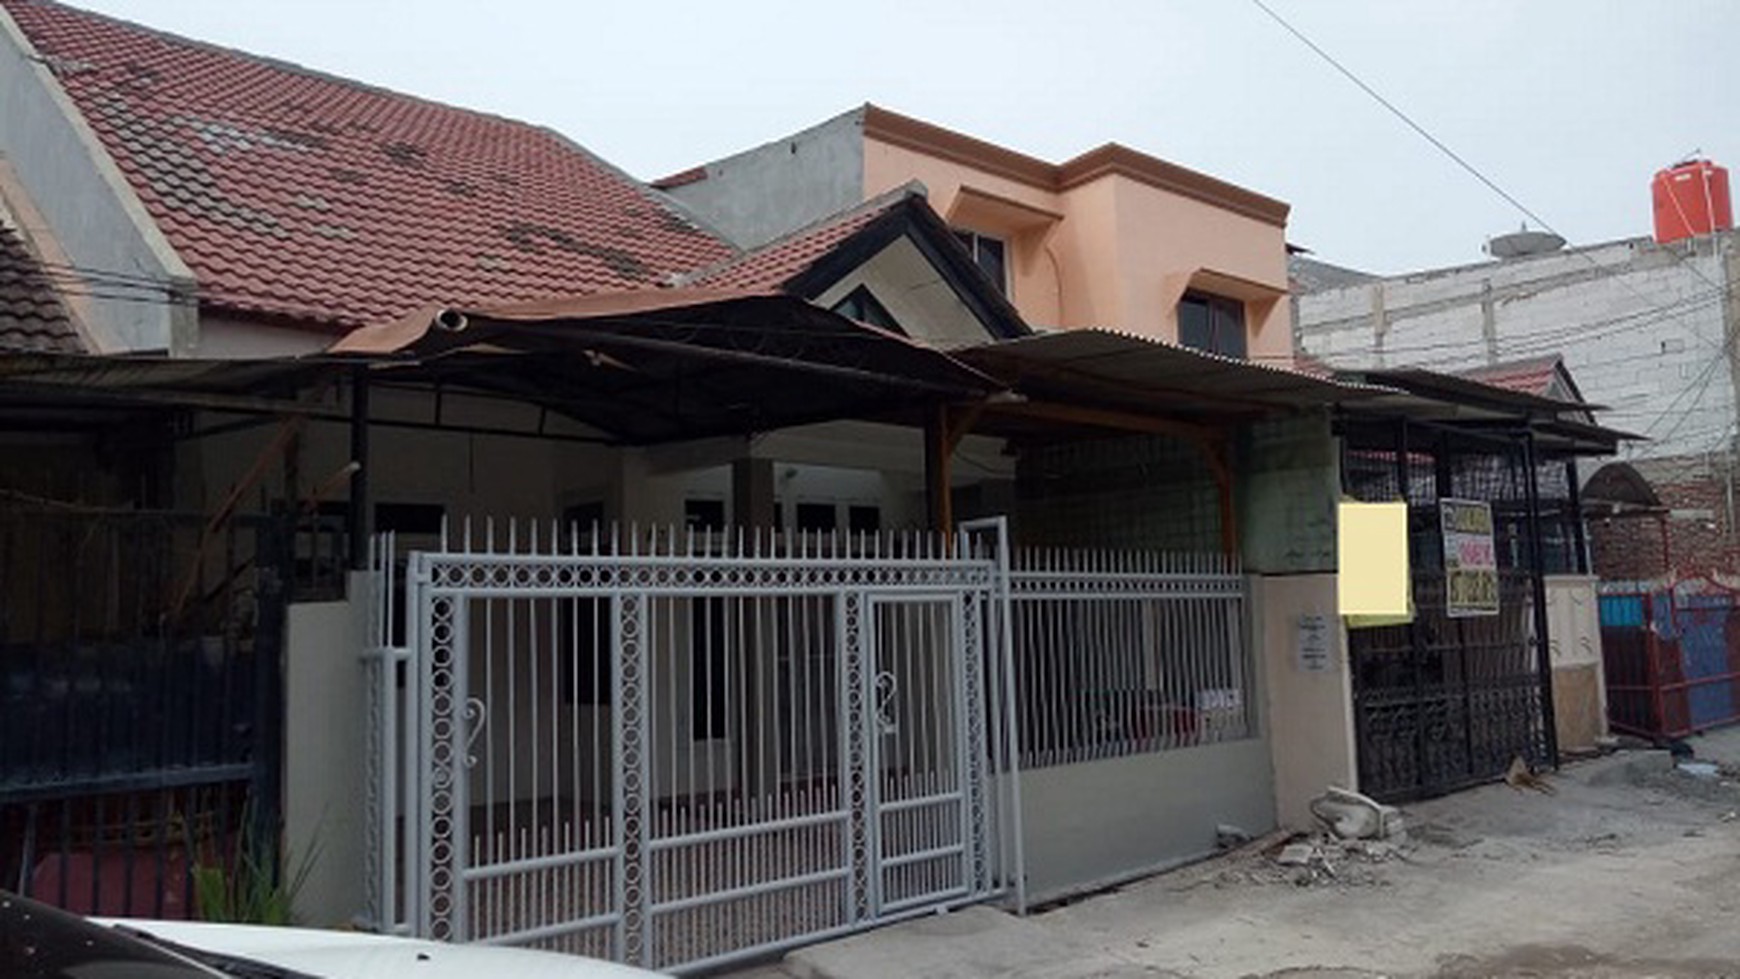 Dijual Rumah Murah lokasi nyaman Di Griya dadap residence - Tangerang